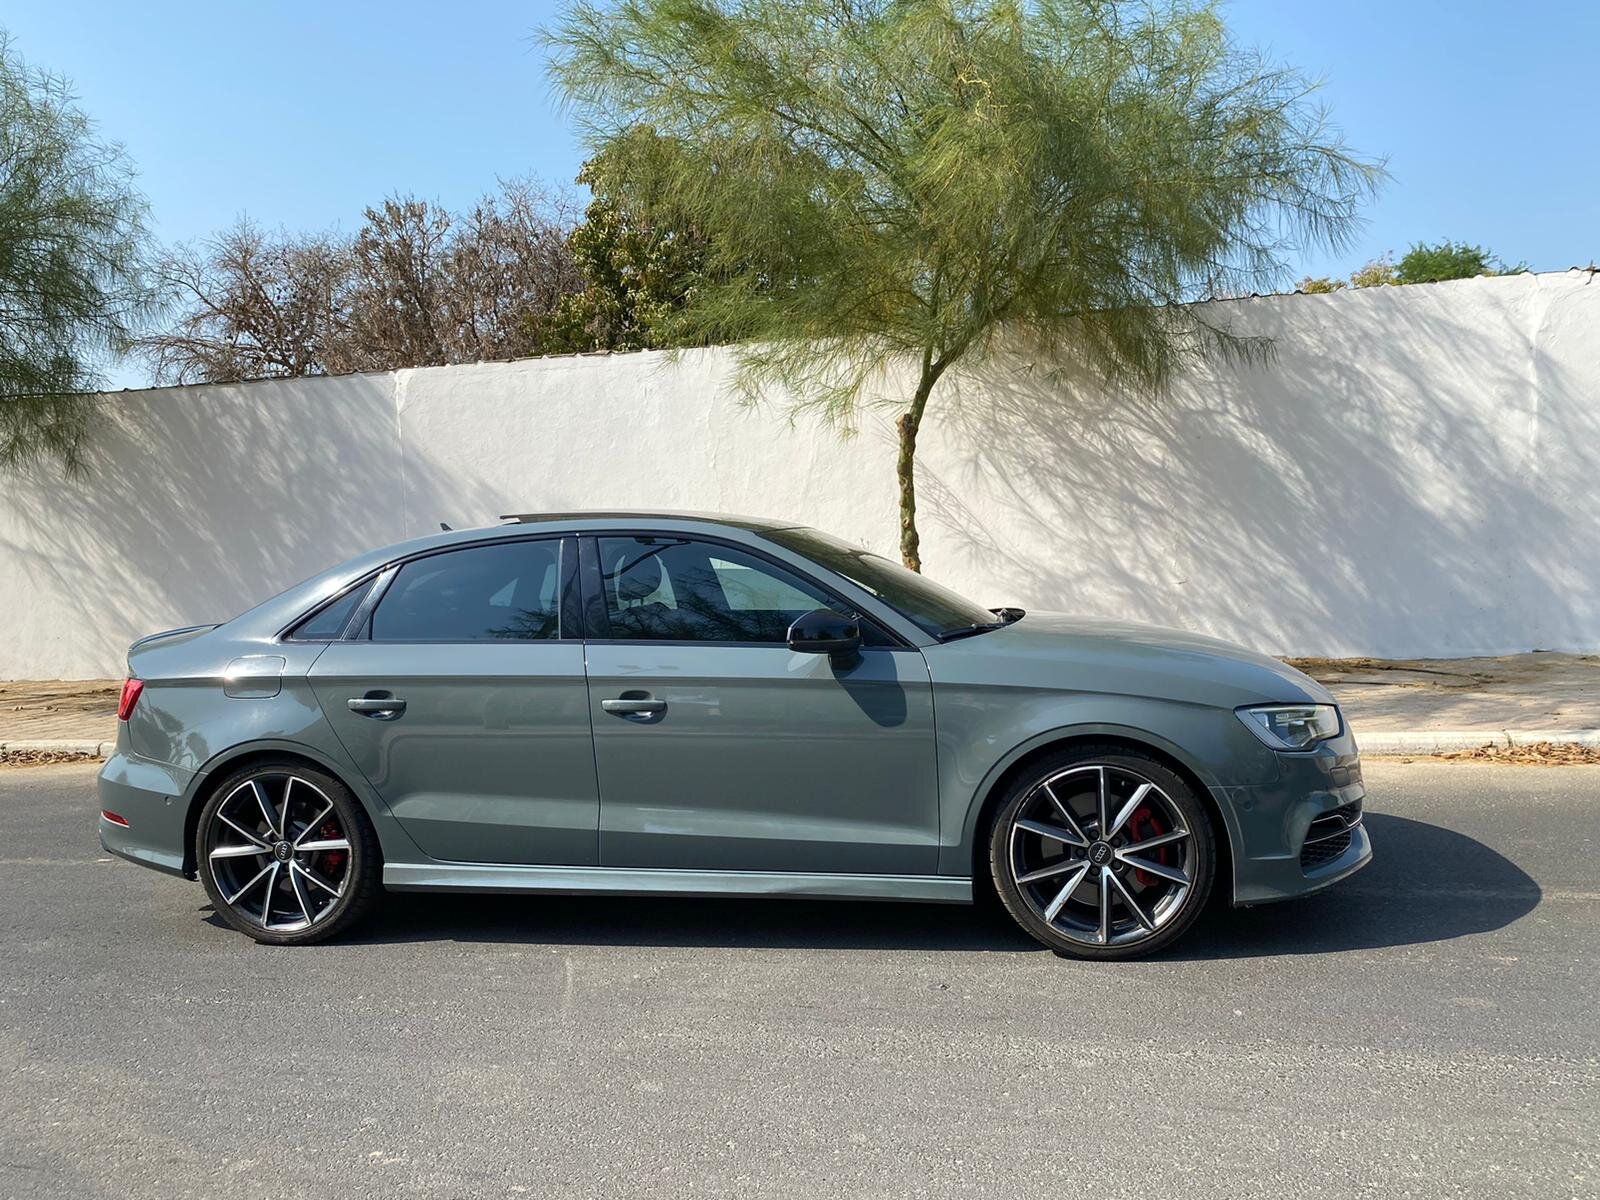 Audi s3 2016 اودي اس٣ ٢٠١٦2.jpeg